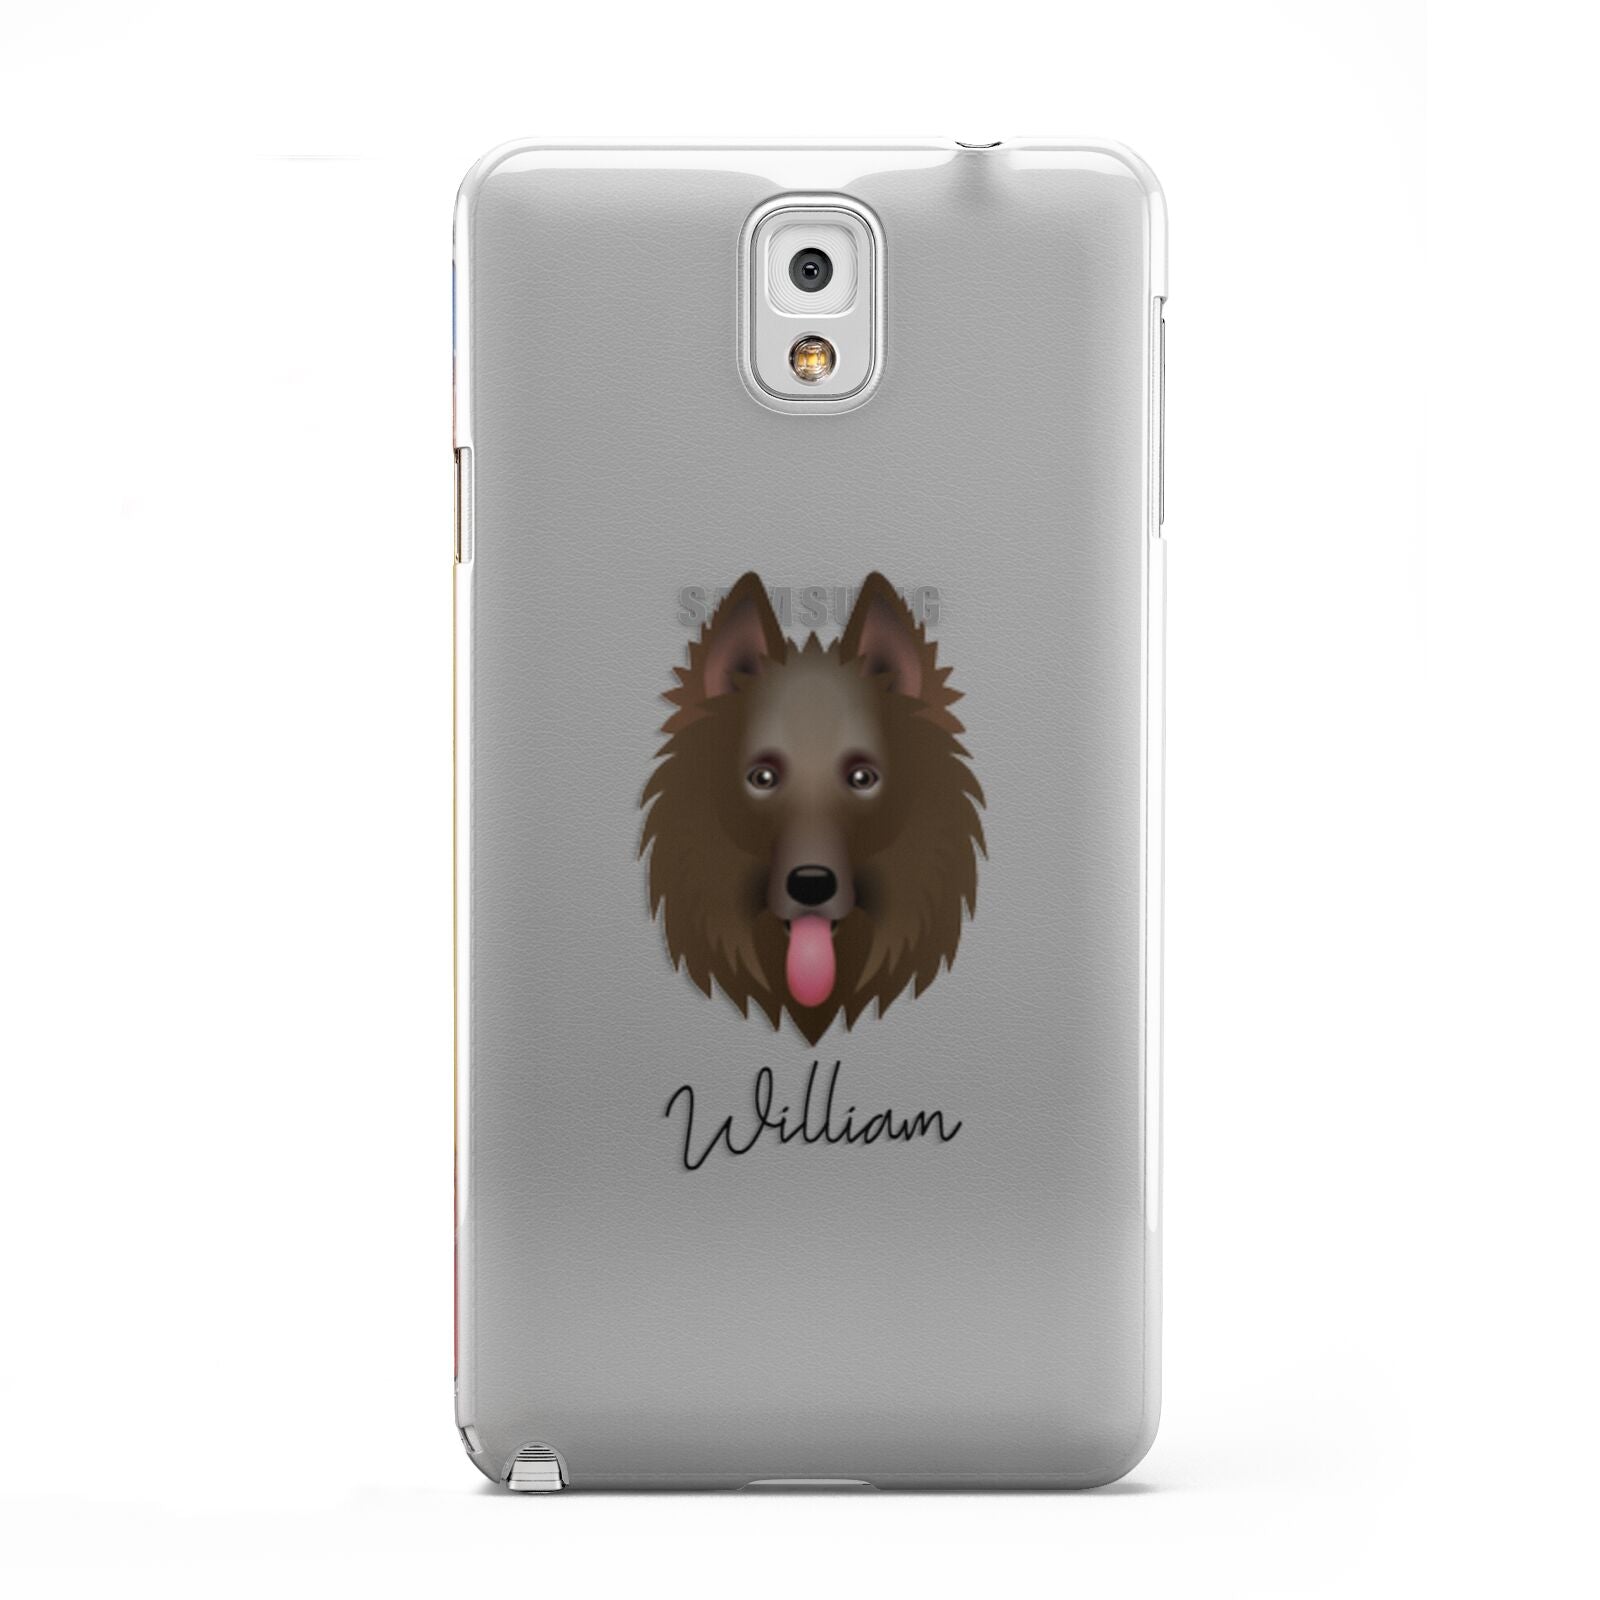 Belgian Shepherd Personalised Samsung Galaxy Note 3 Case